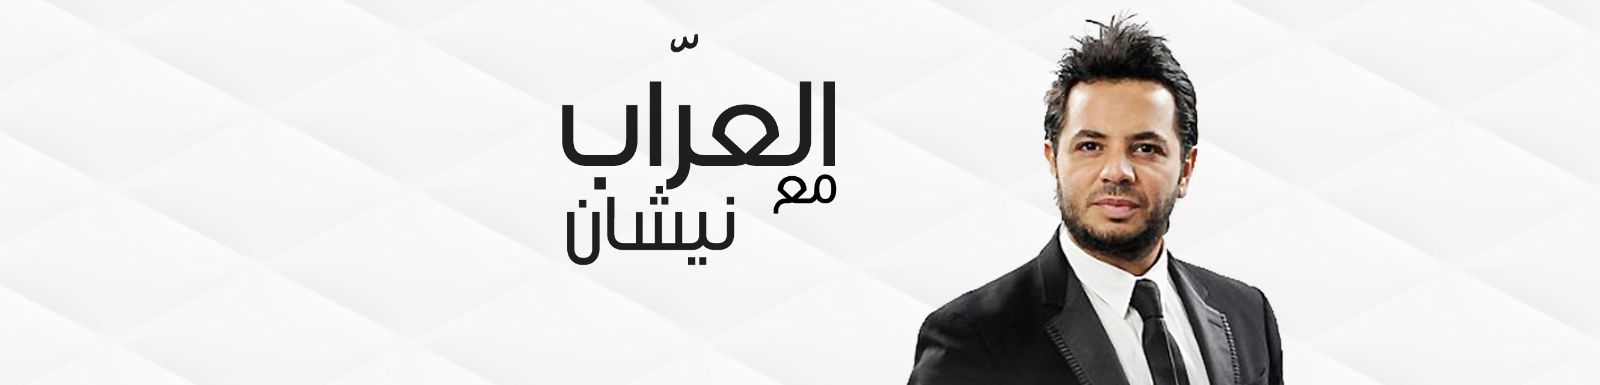 مشاهدة برنامج العراب حلقة يارا وهاني سلامه 2014 كاملة